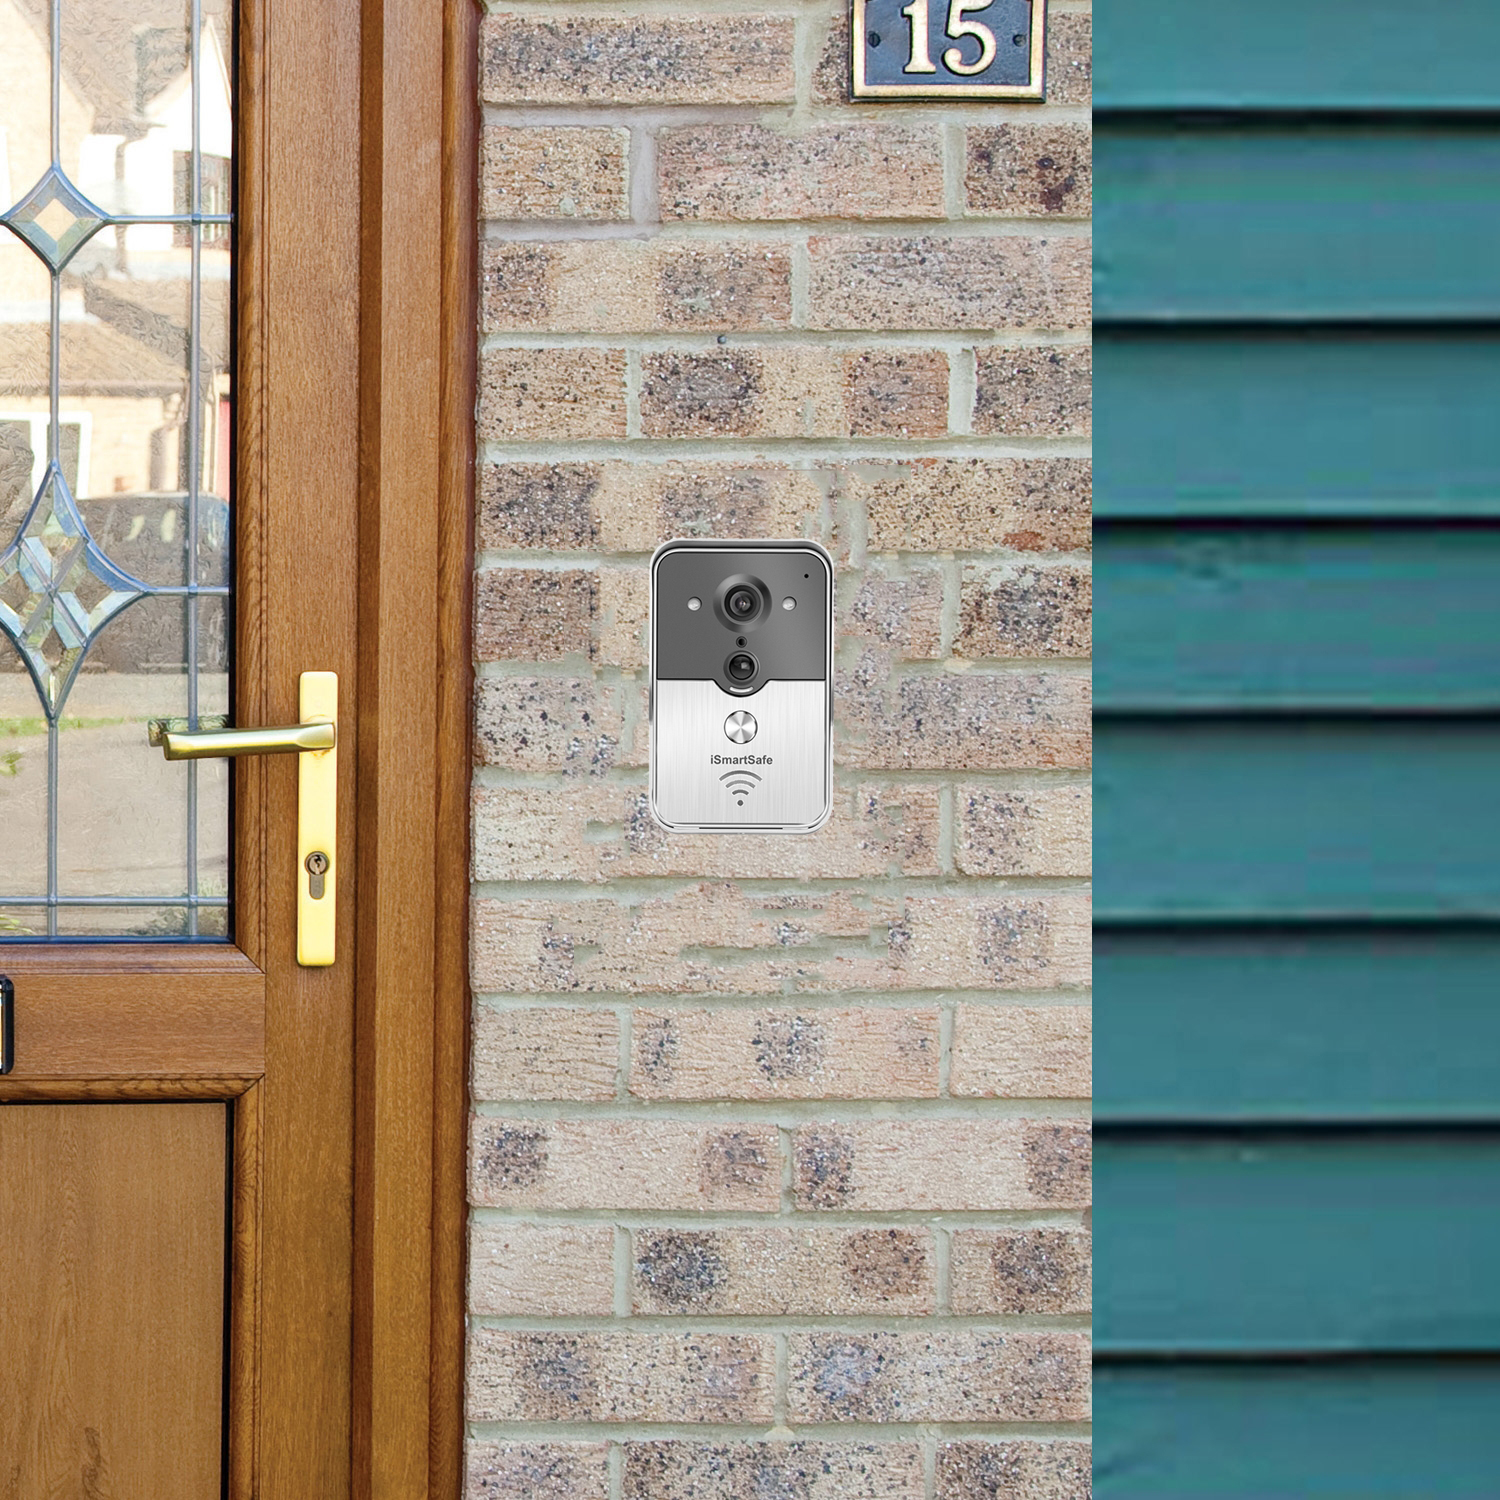 SmartSafe Doorbell at front door